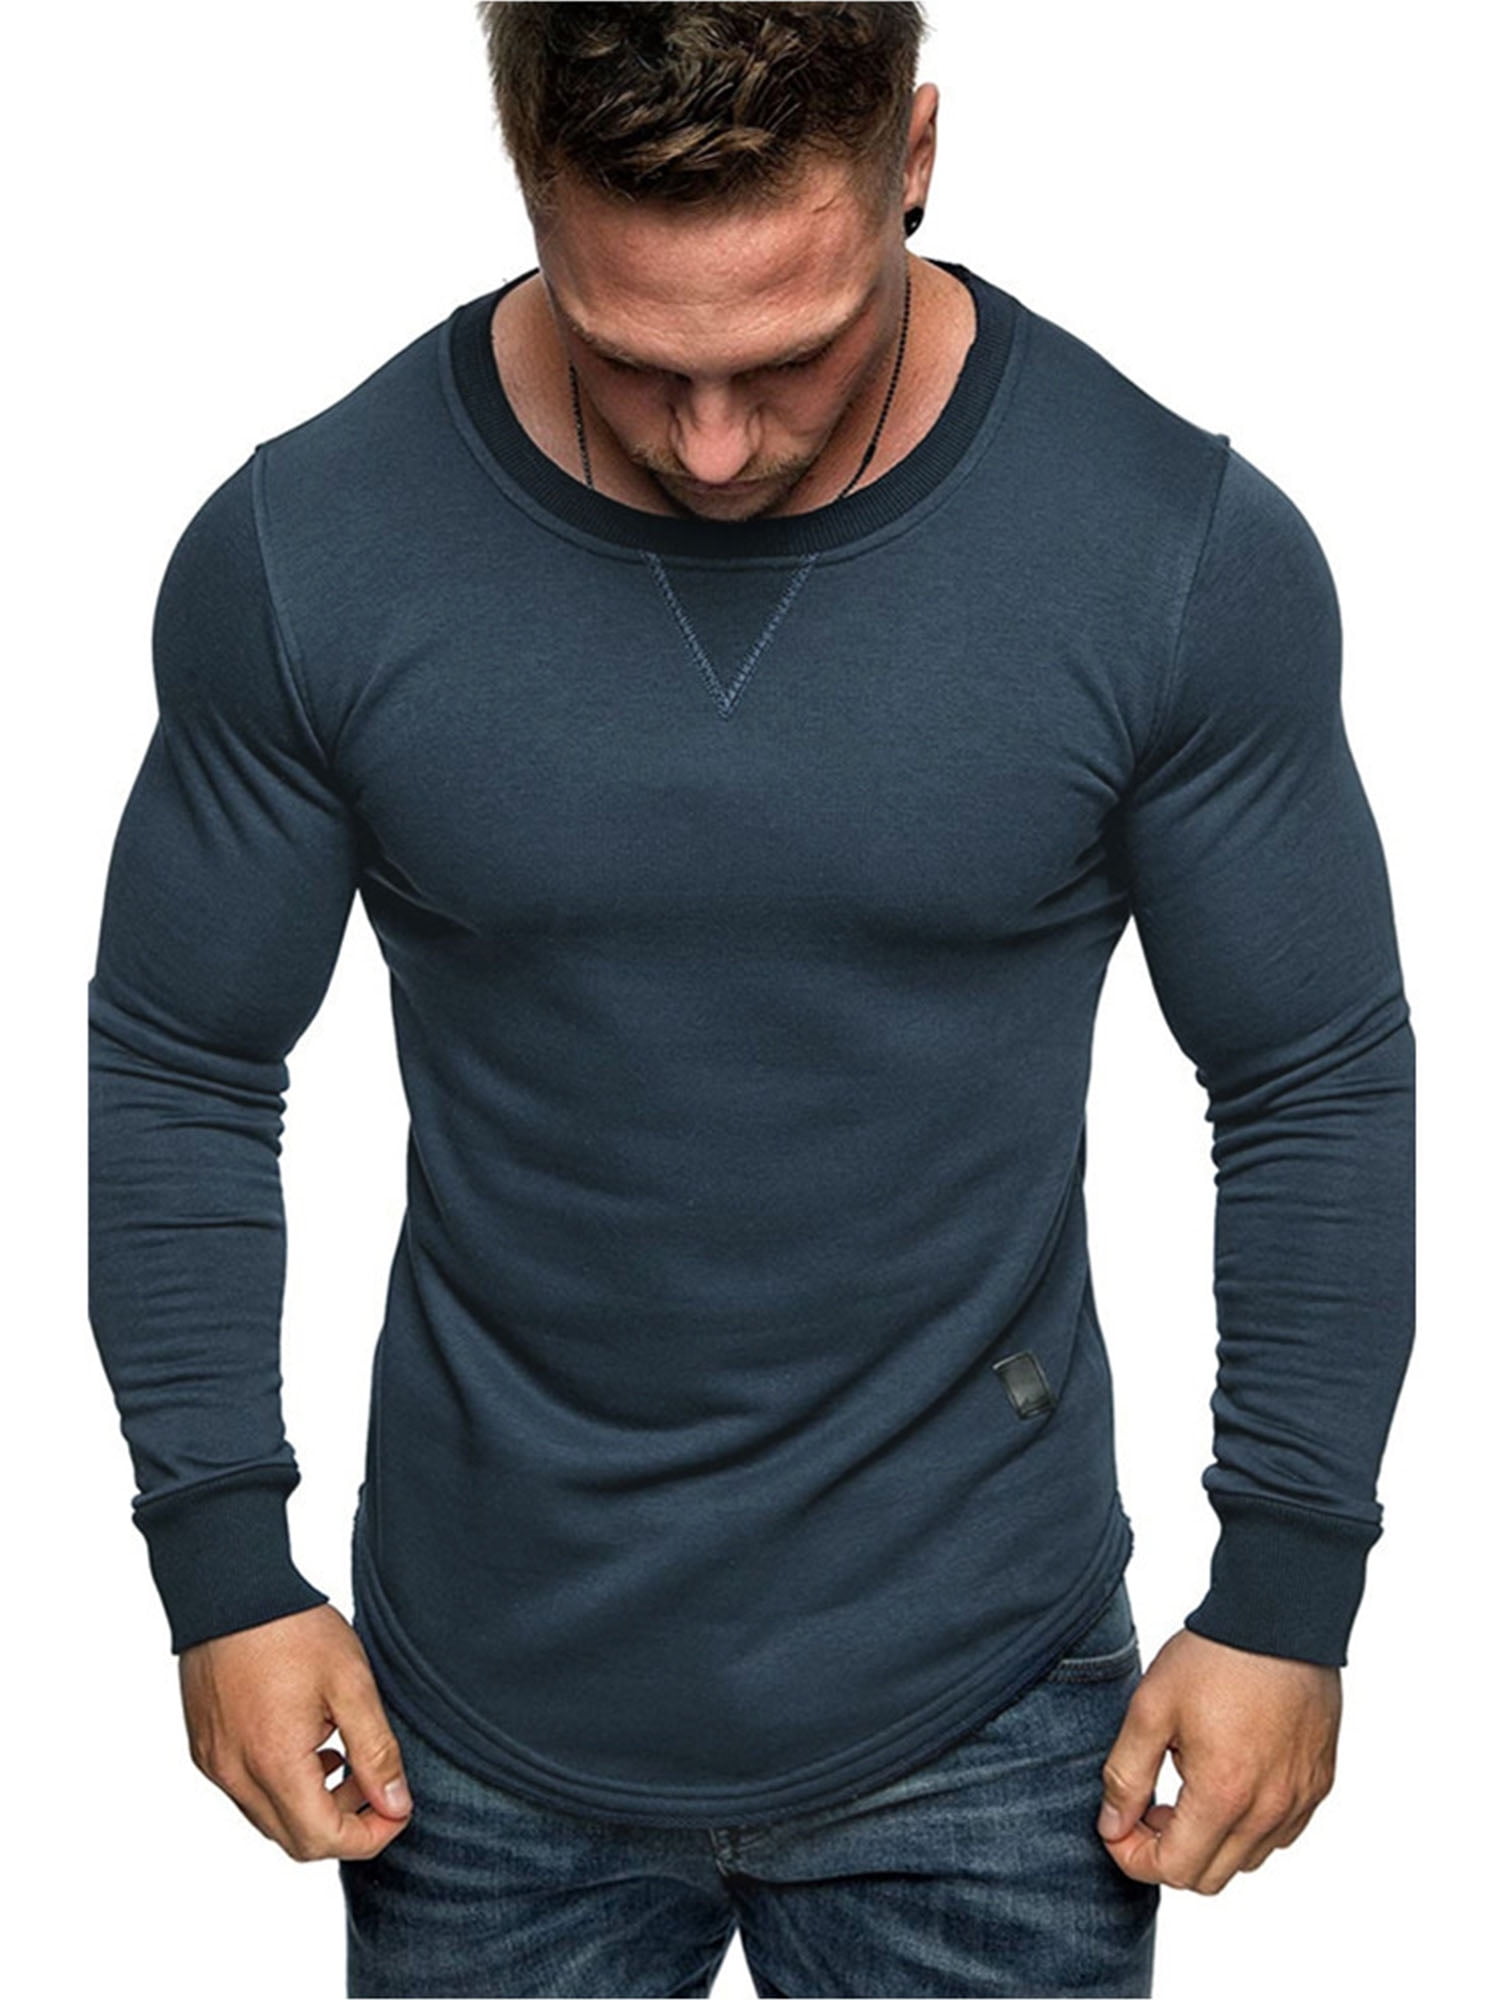 All Brand Long Sleeve Workout Shirt